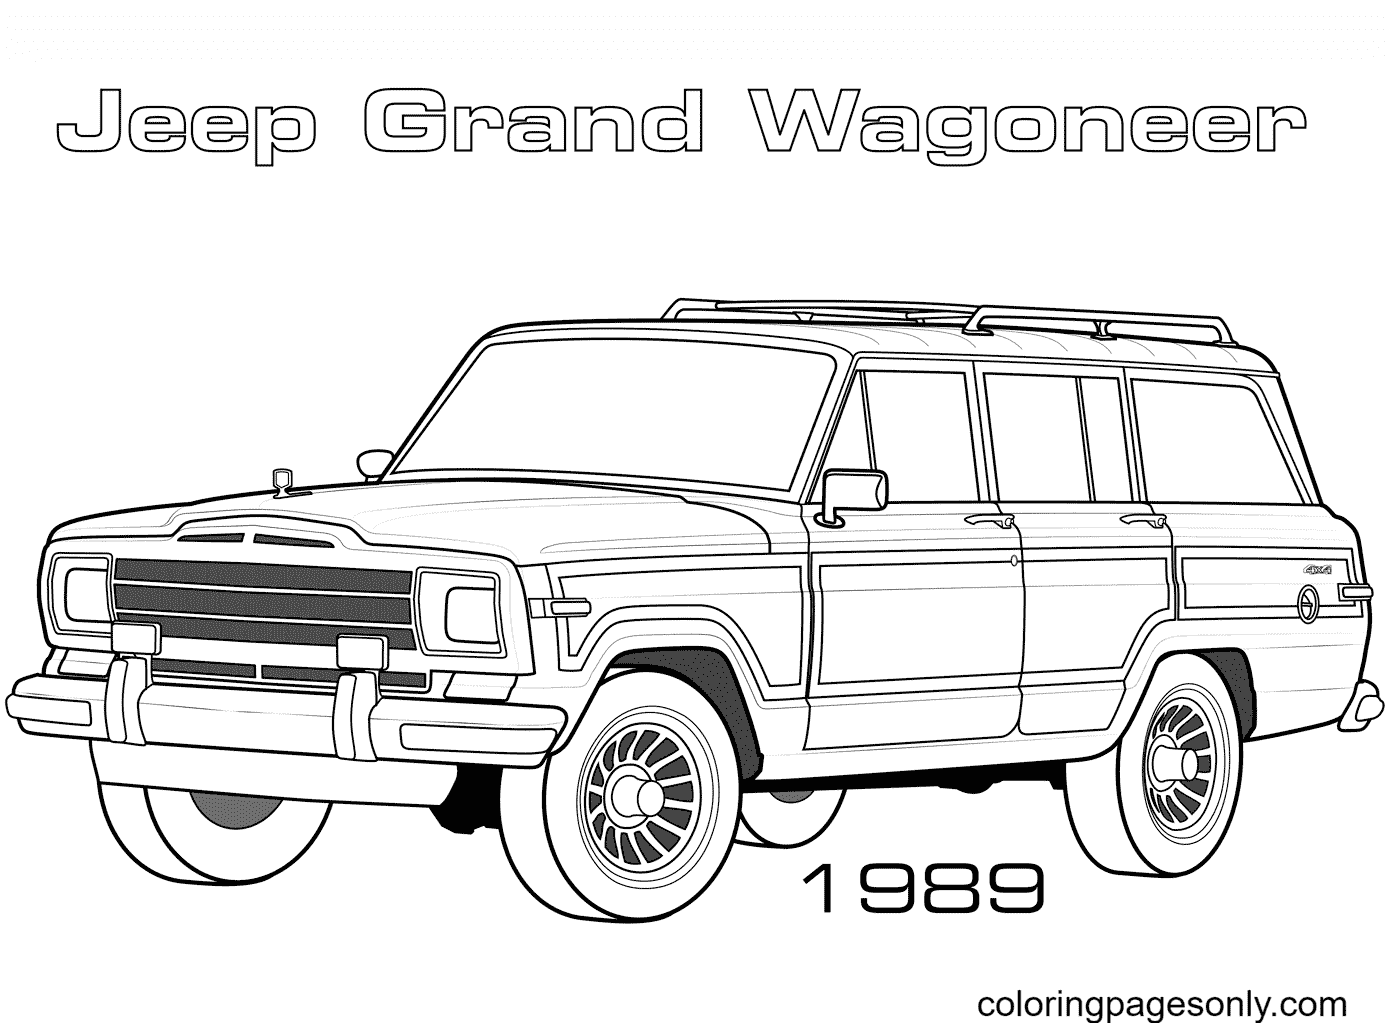 Jeep Grand Wagoneer uit 1989 van Jeep